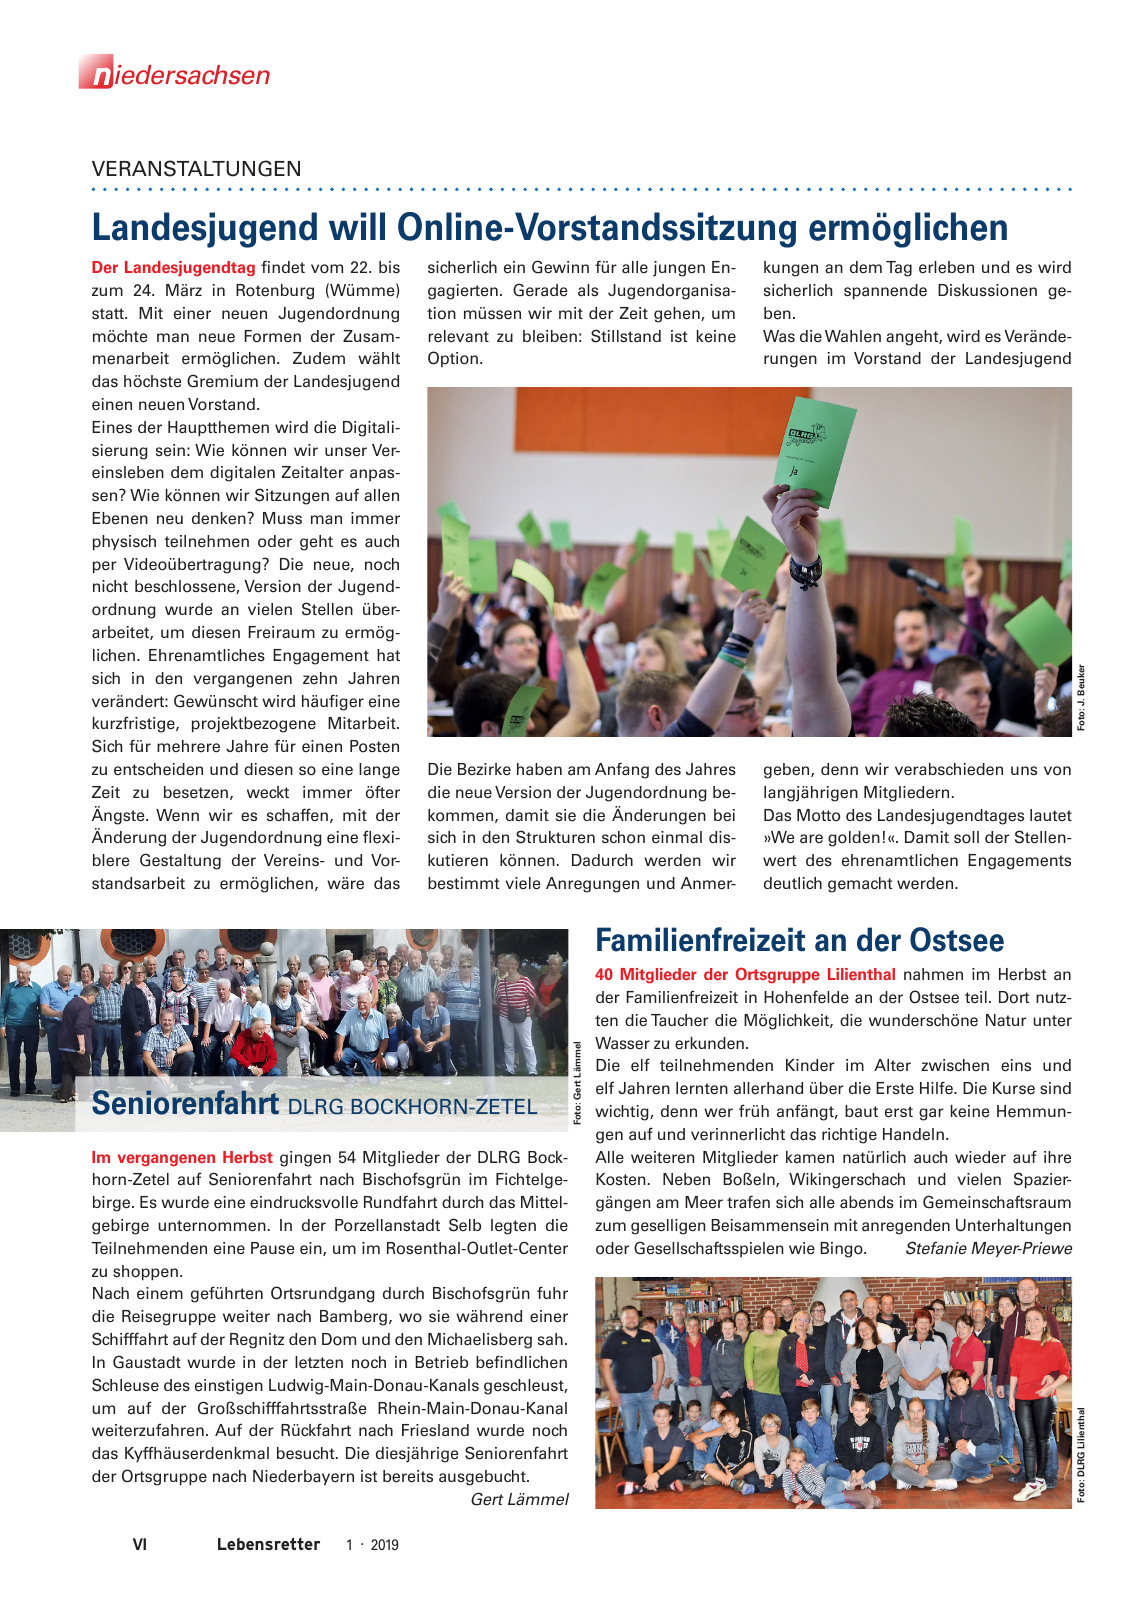 Vorschau Lebensretter 1/2019 –  Regionalausgabe Niedersachsen Seite 8